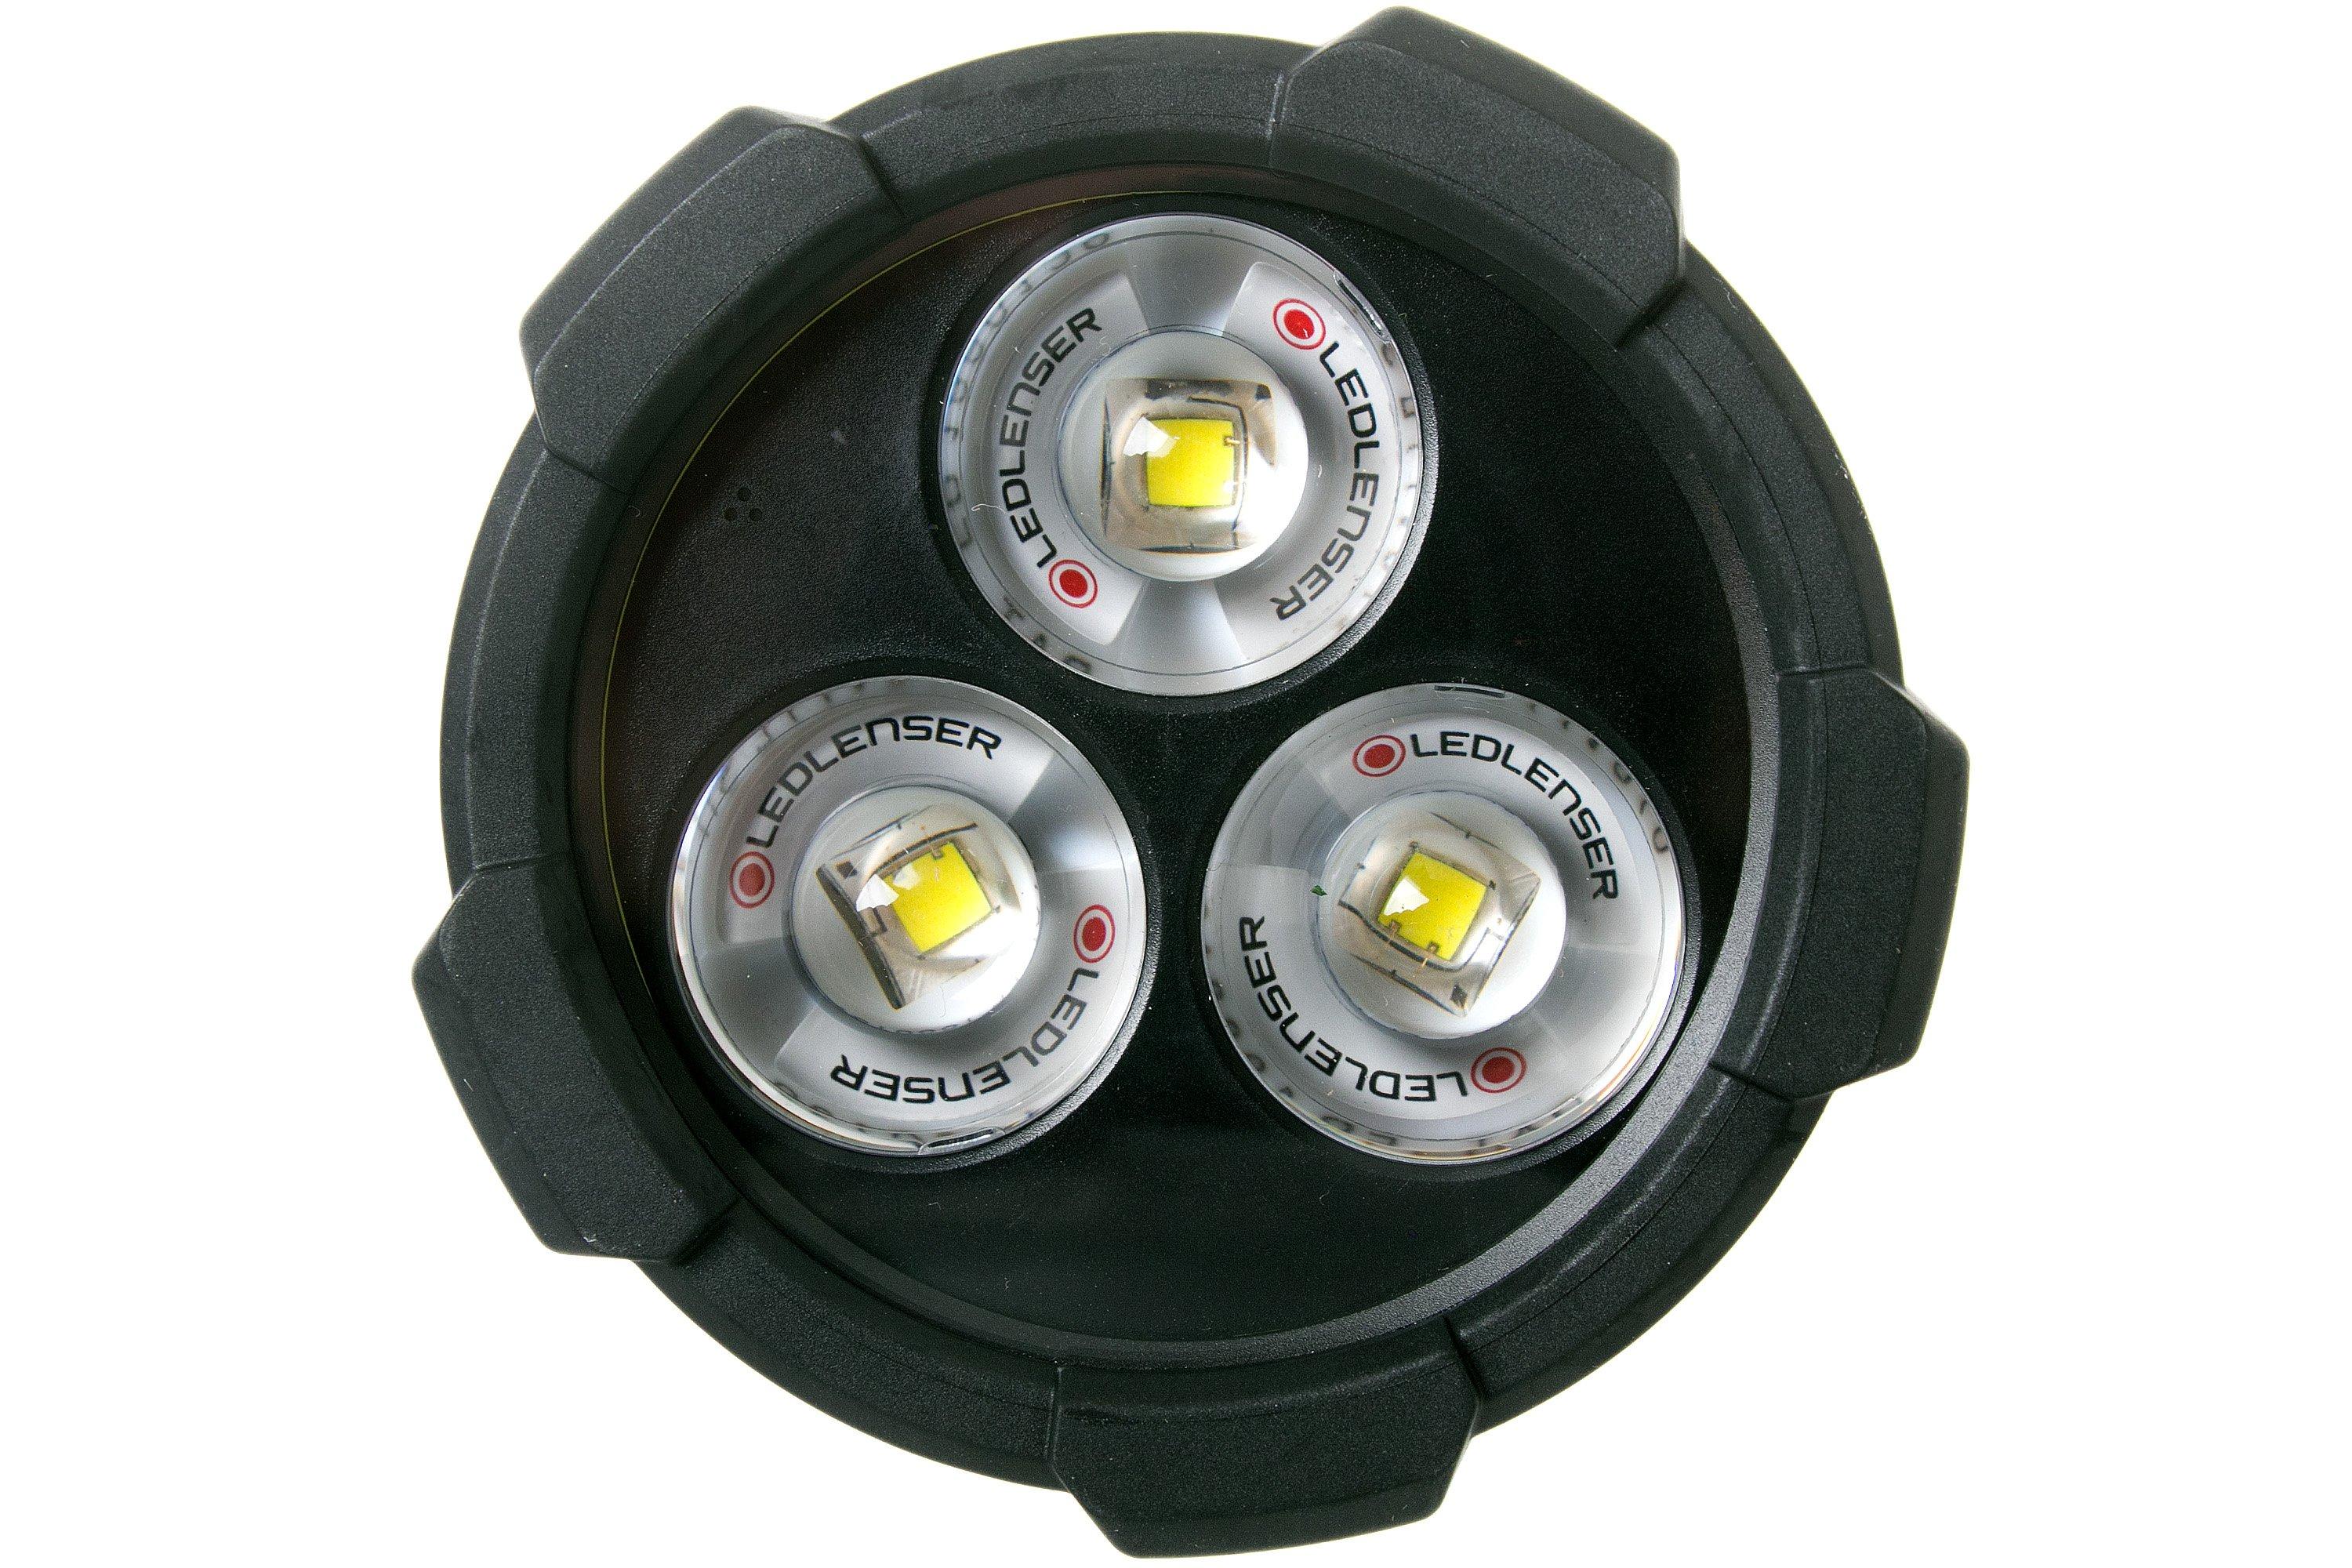 LEDLENSER P18R Signature Flashlight Review (4500 Lumens, 720m Throw,  Adjustable Focus) 